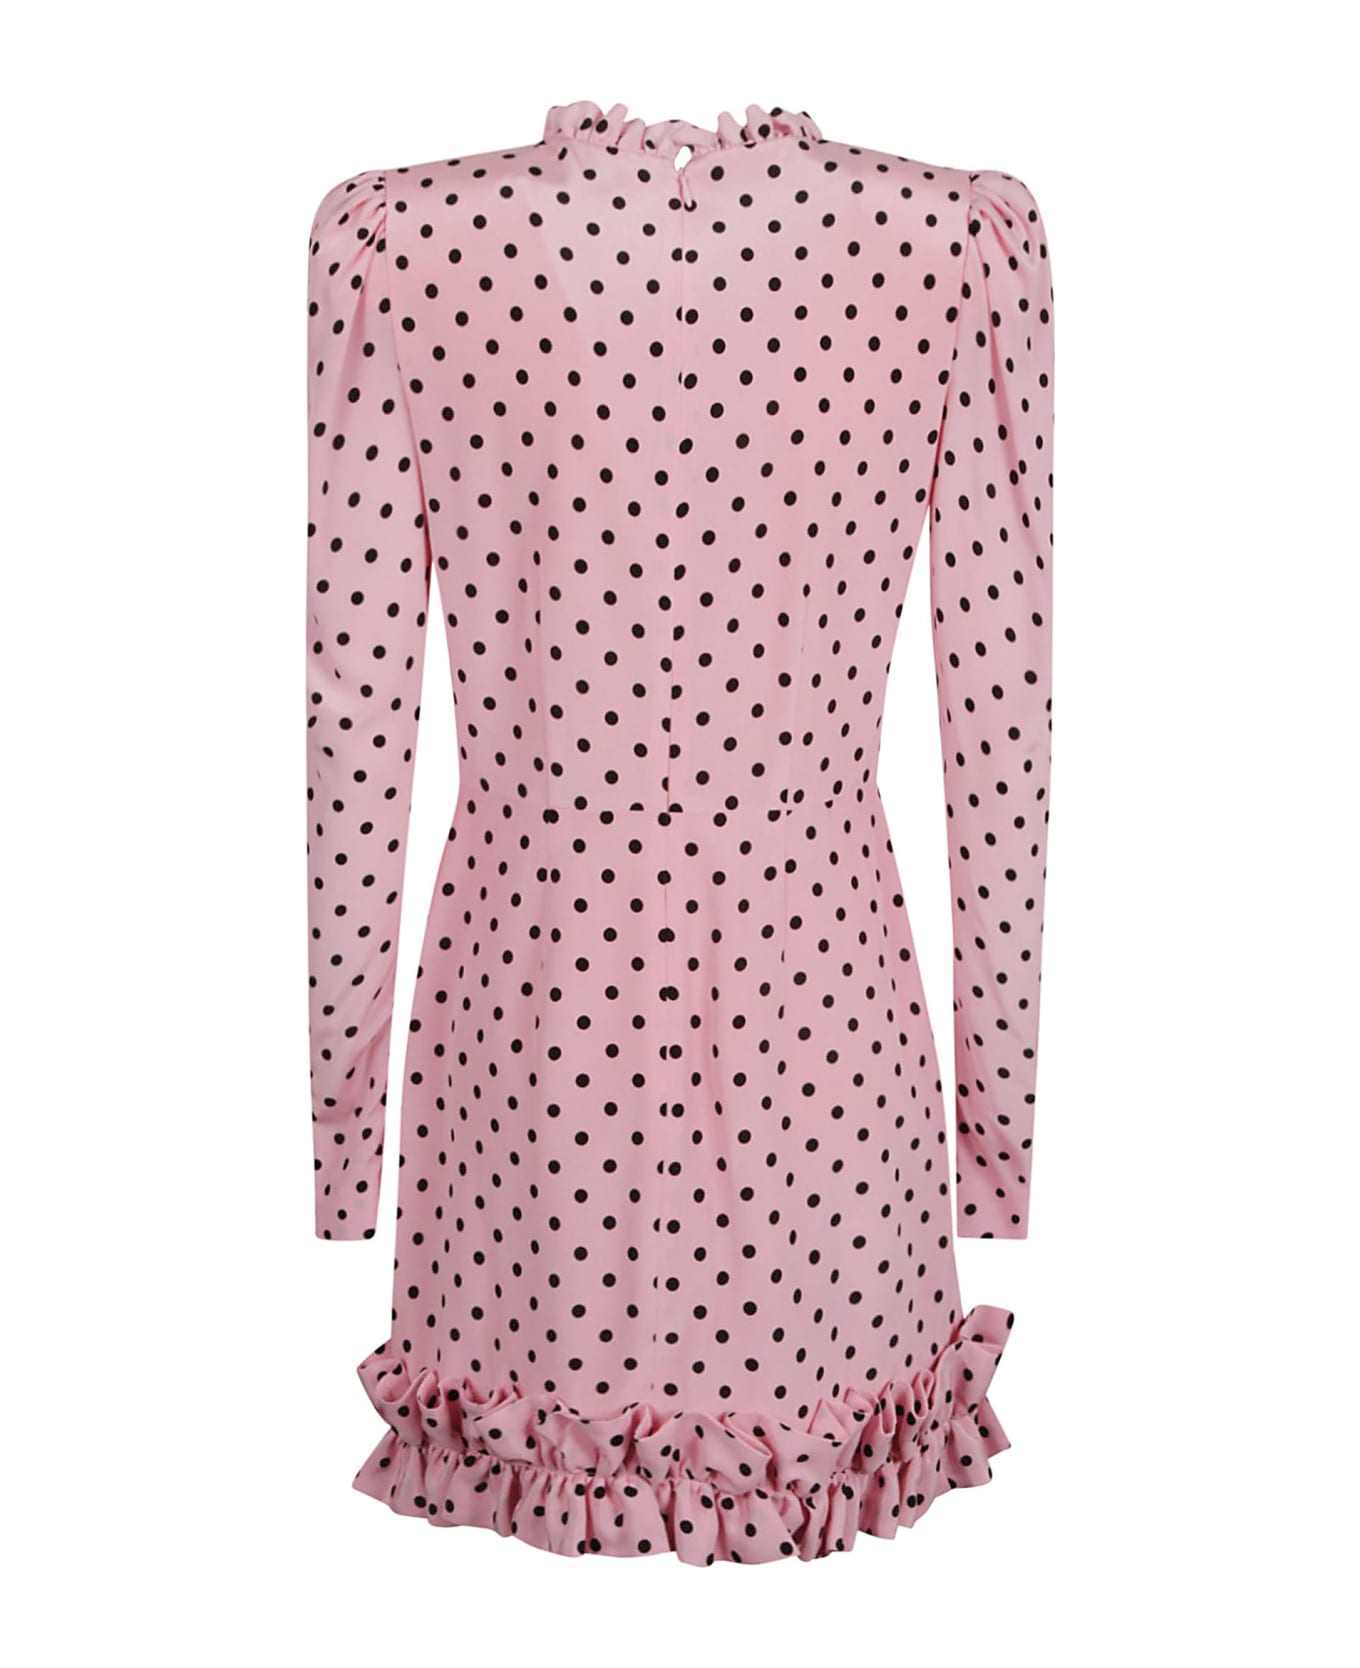 Alessandra Rich Polka Dot Print Mini Dress - Pink/Black